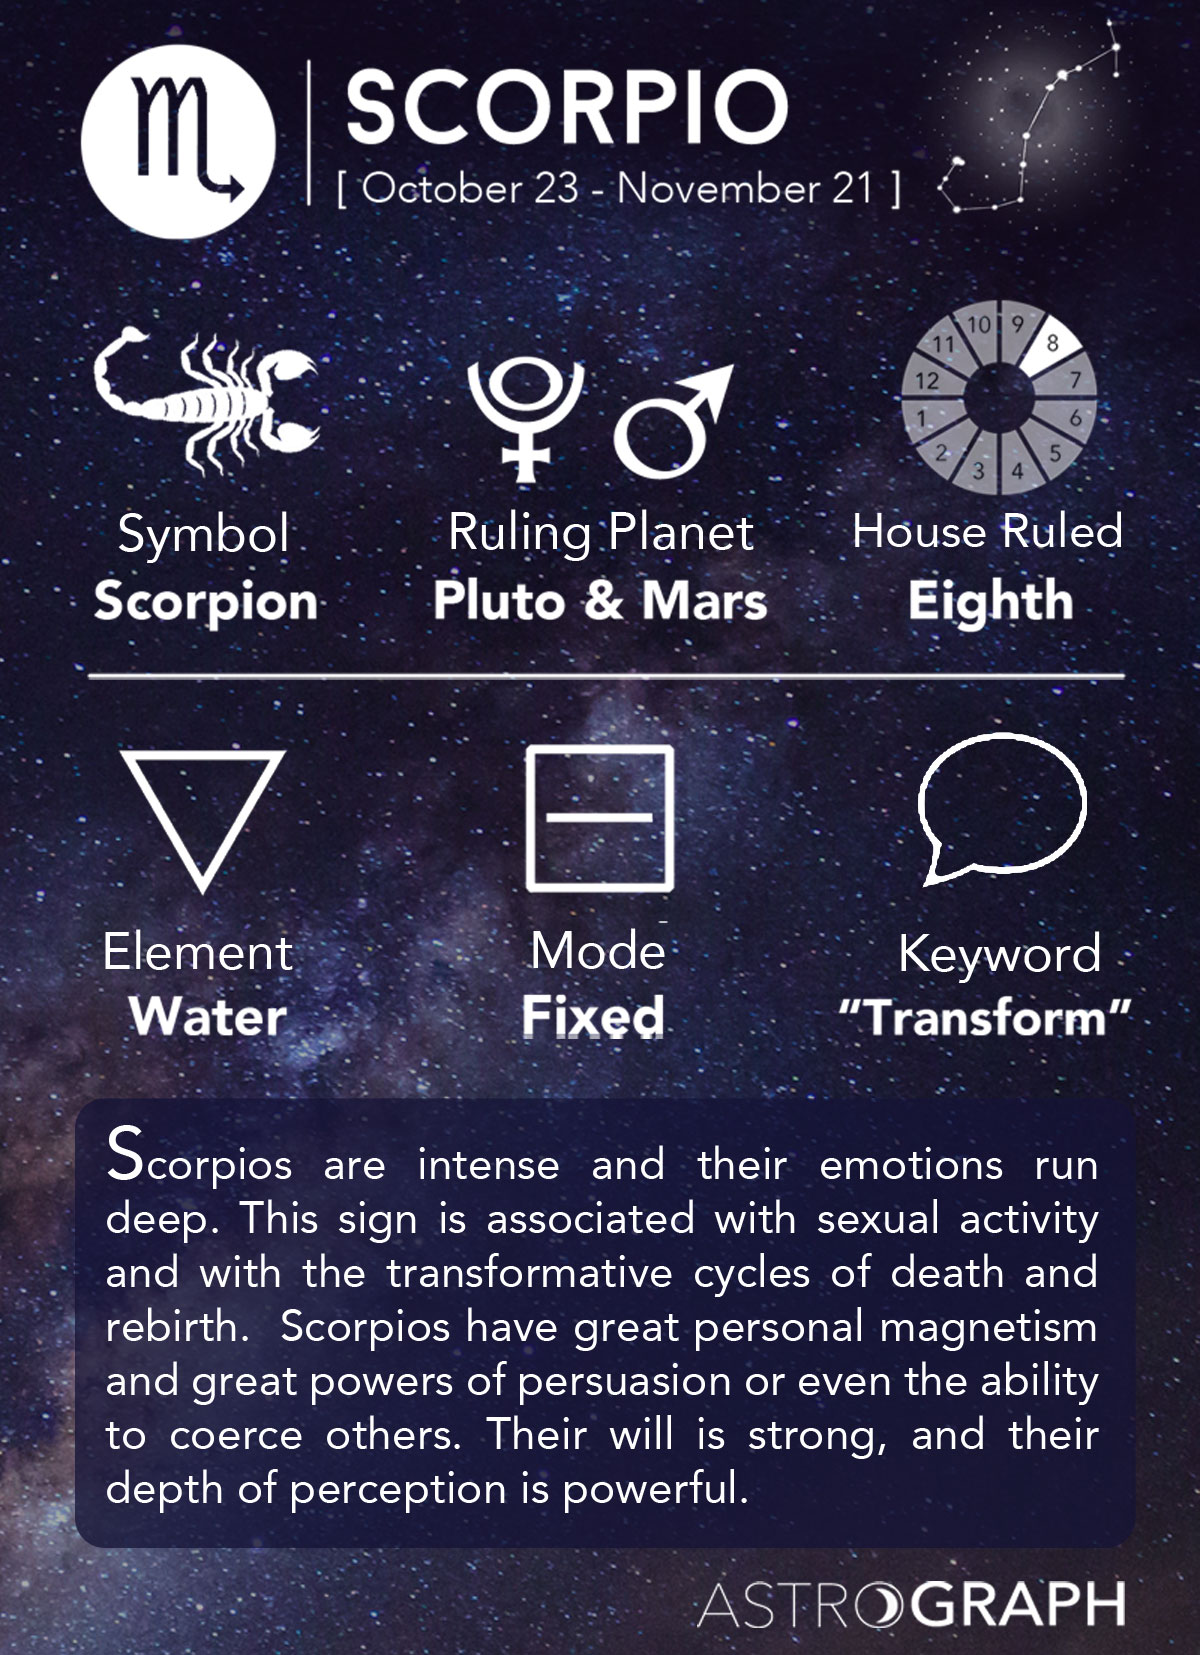 Scorpio Overview